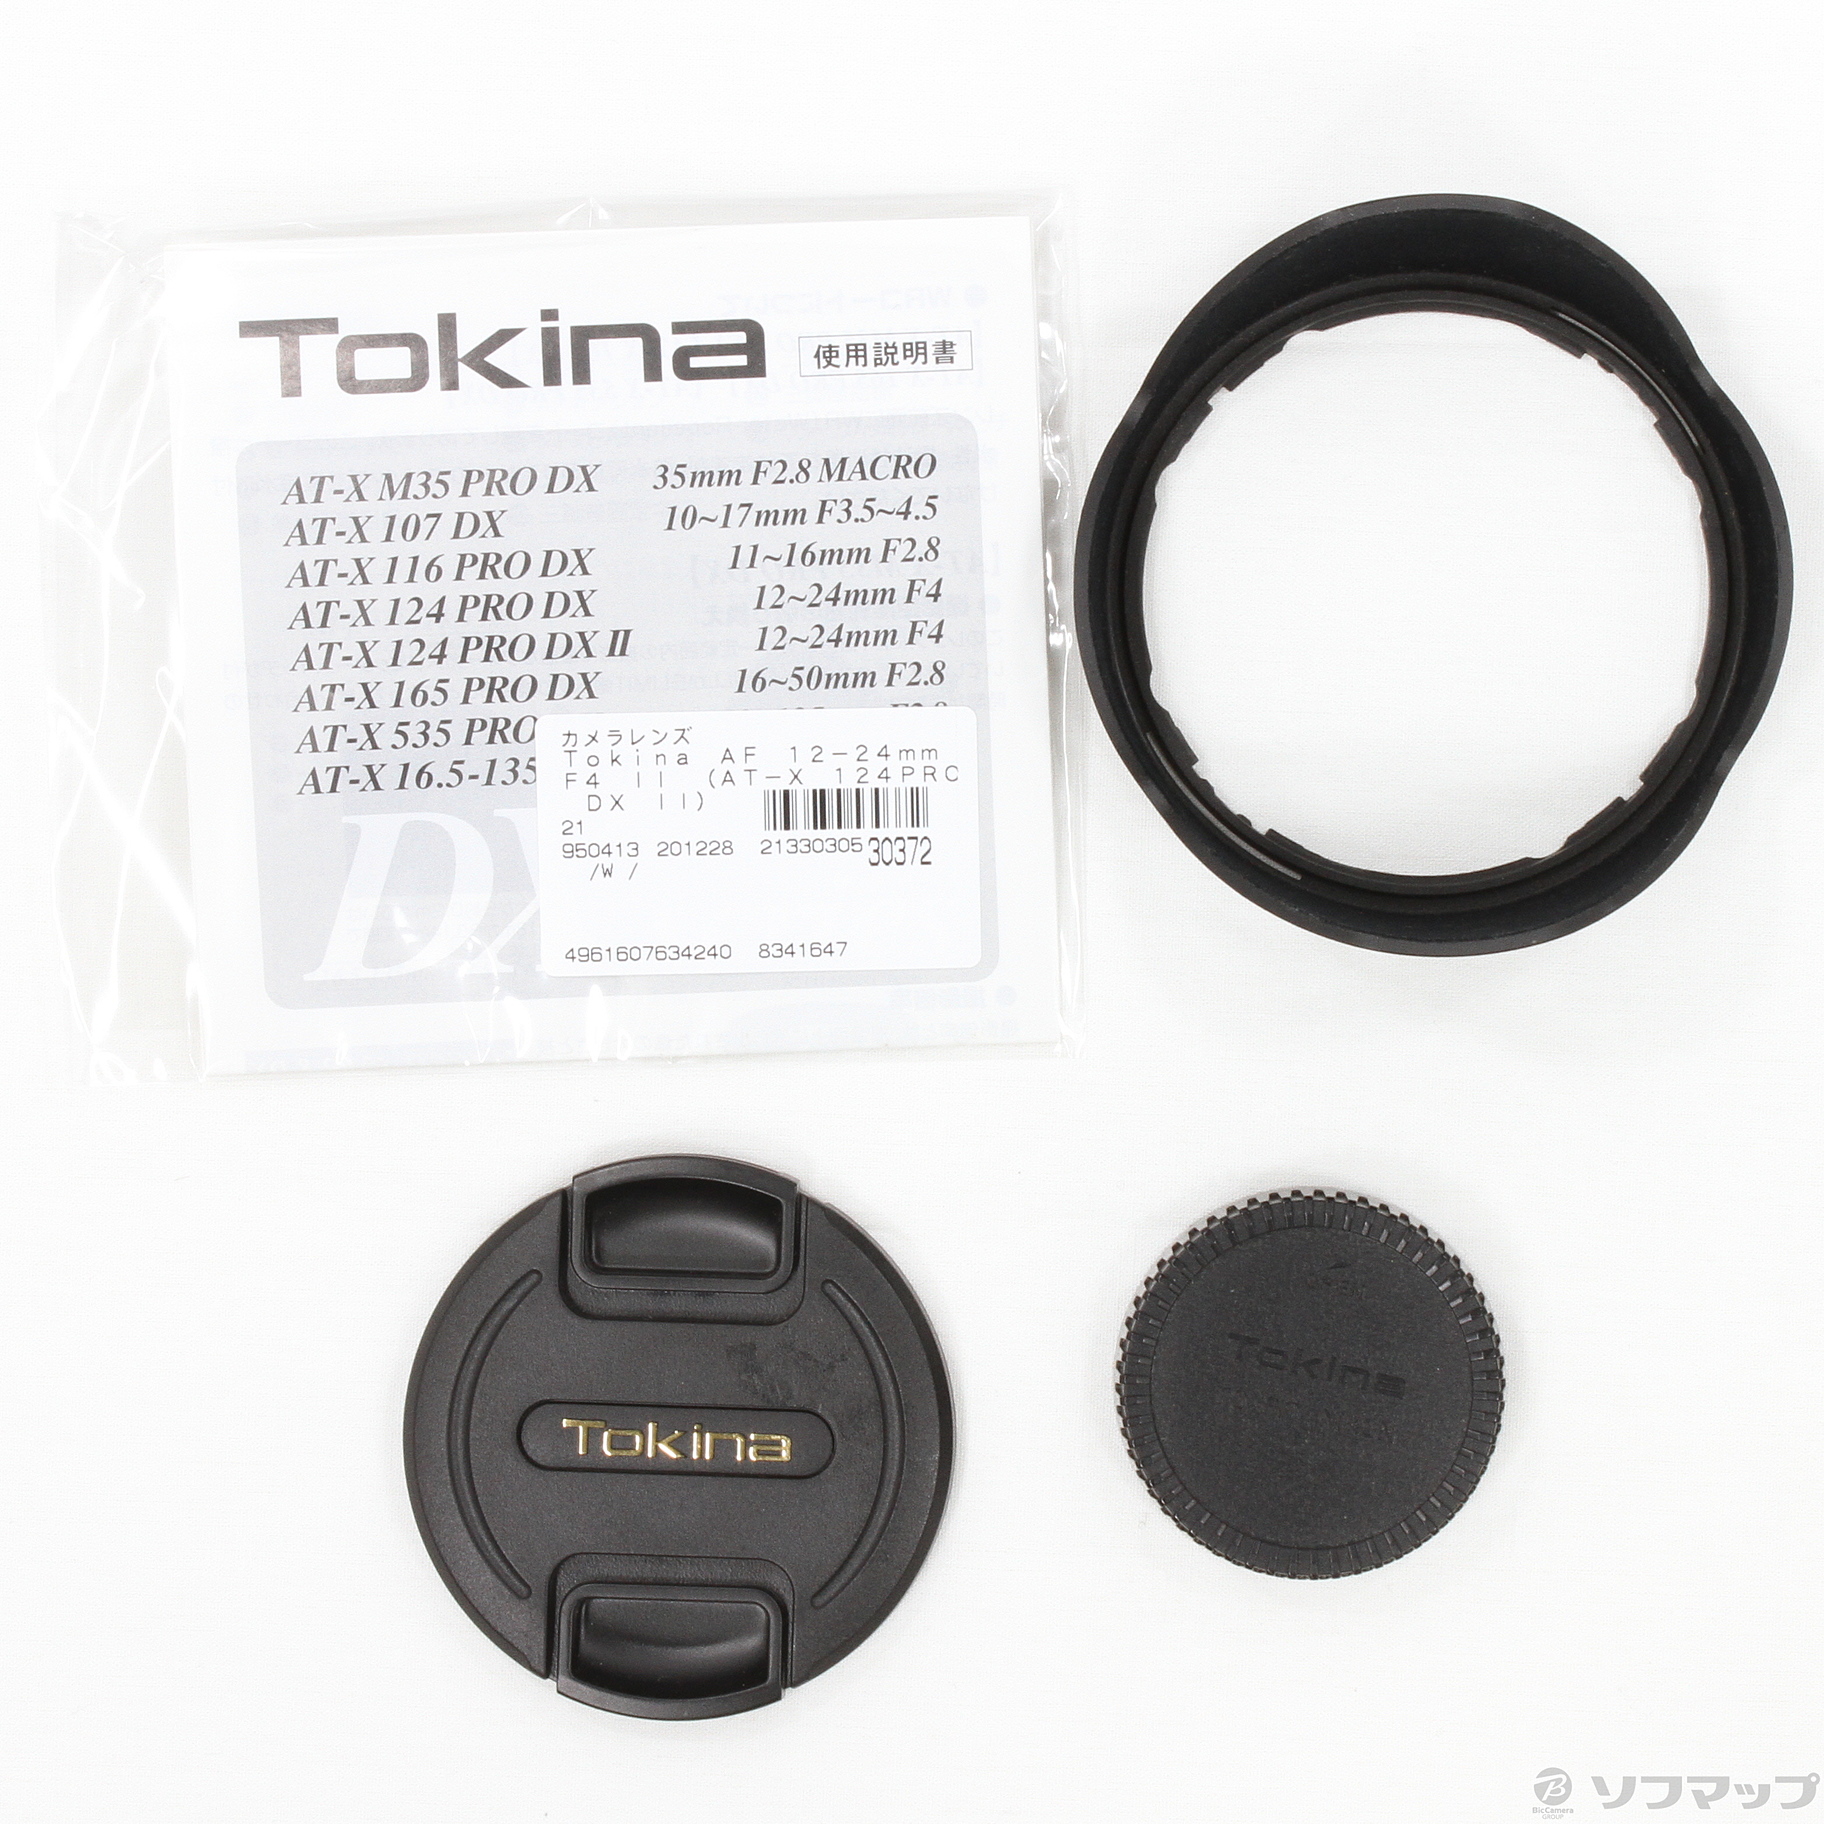 中古】Tokina AF 12-24mm F4 II (AT-X 124PRO DX II) (Nikon用) ◇12